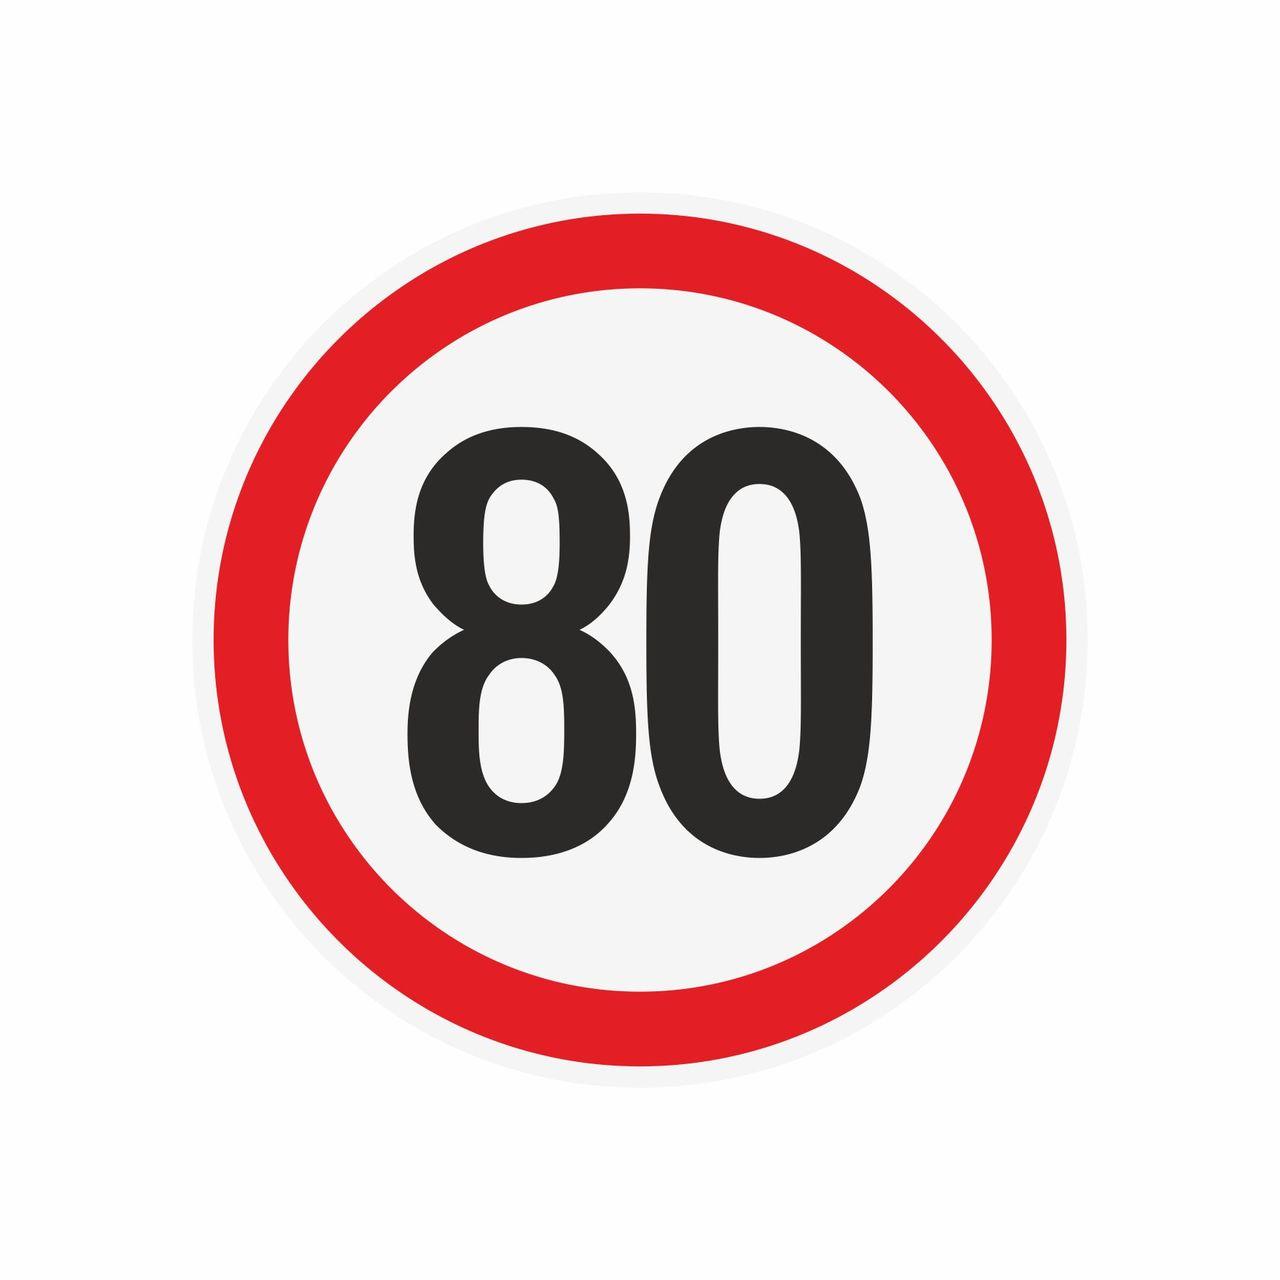 Наклейка ограничения скорости "80" для автотранспорта, 210х210 мм